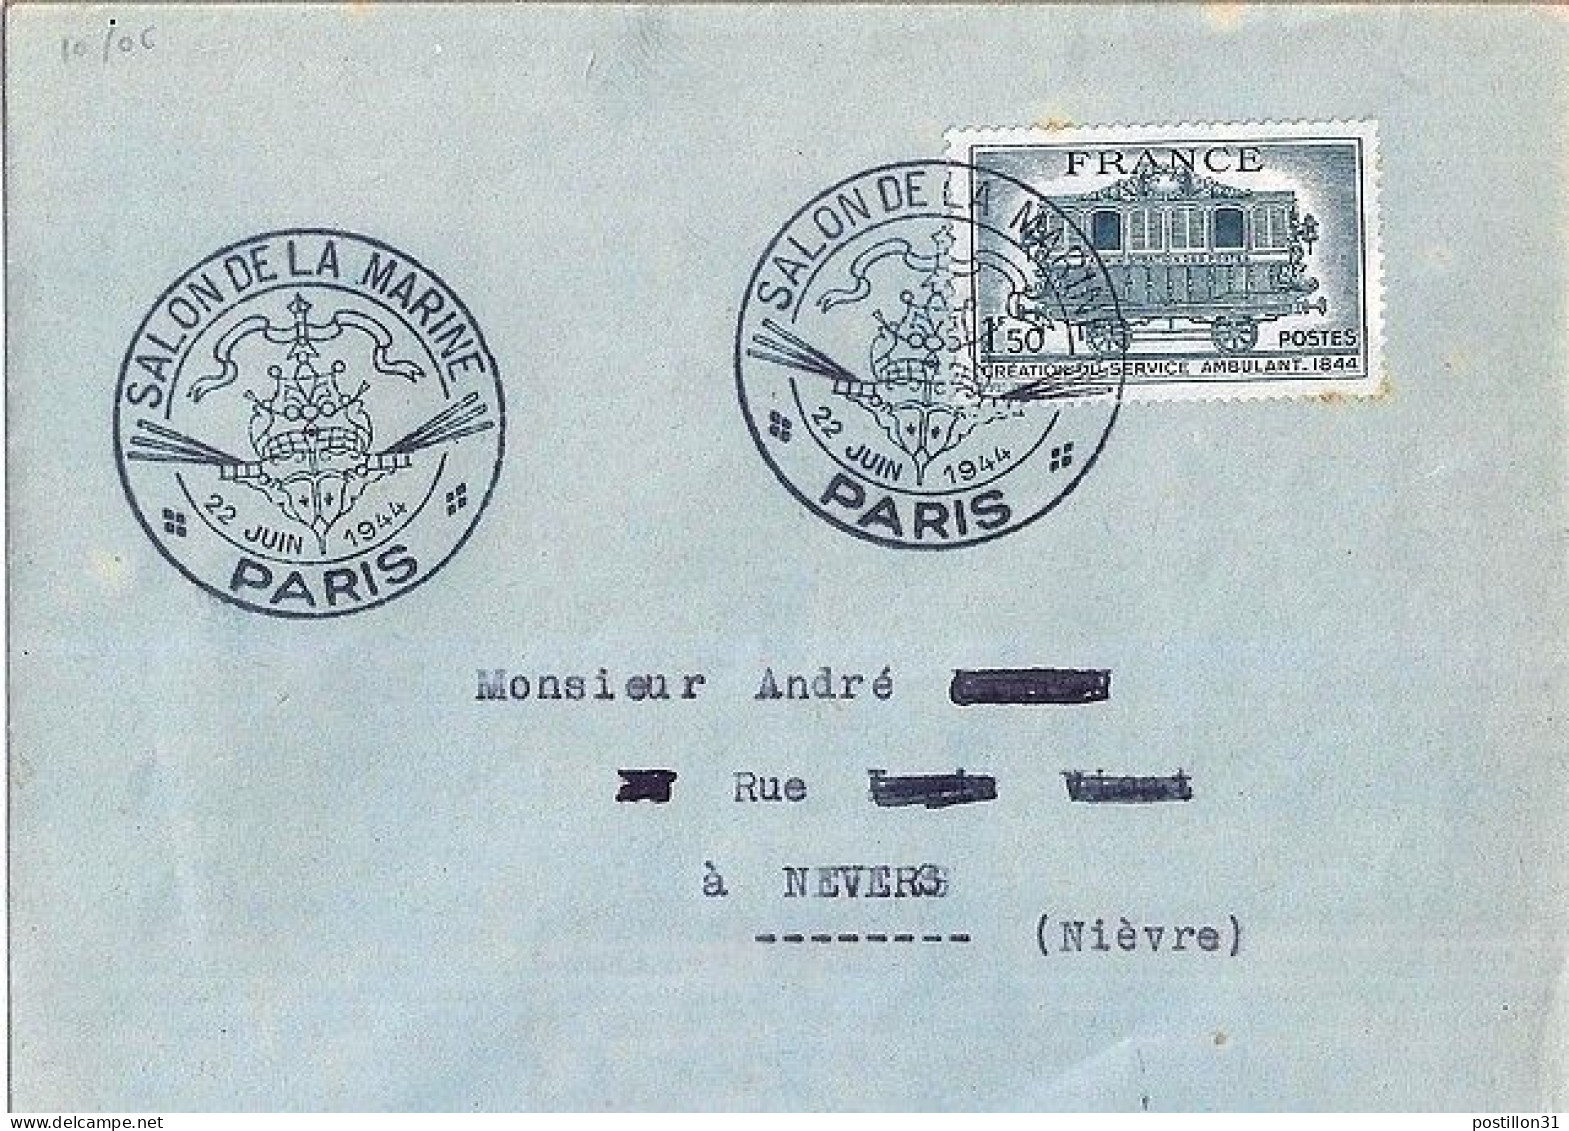 FRANCE N° 609 S/L. DE PARIS/SALON DE LA MARINE/22.6.44 - Briefe U. Dokumente